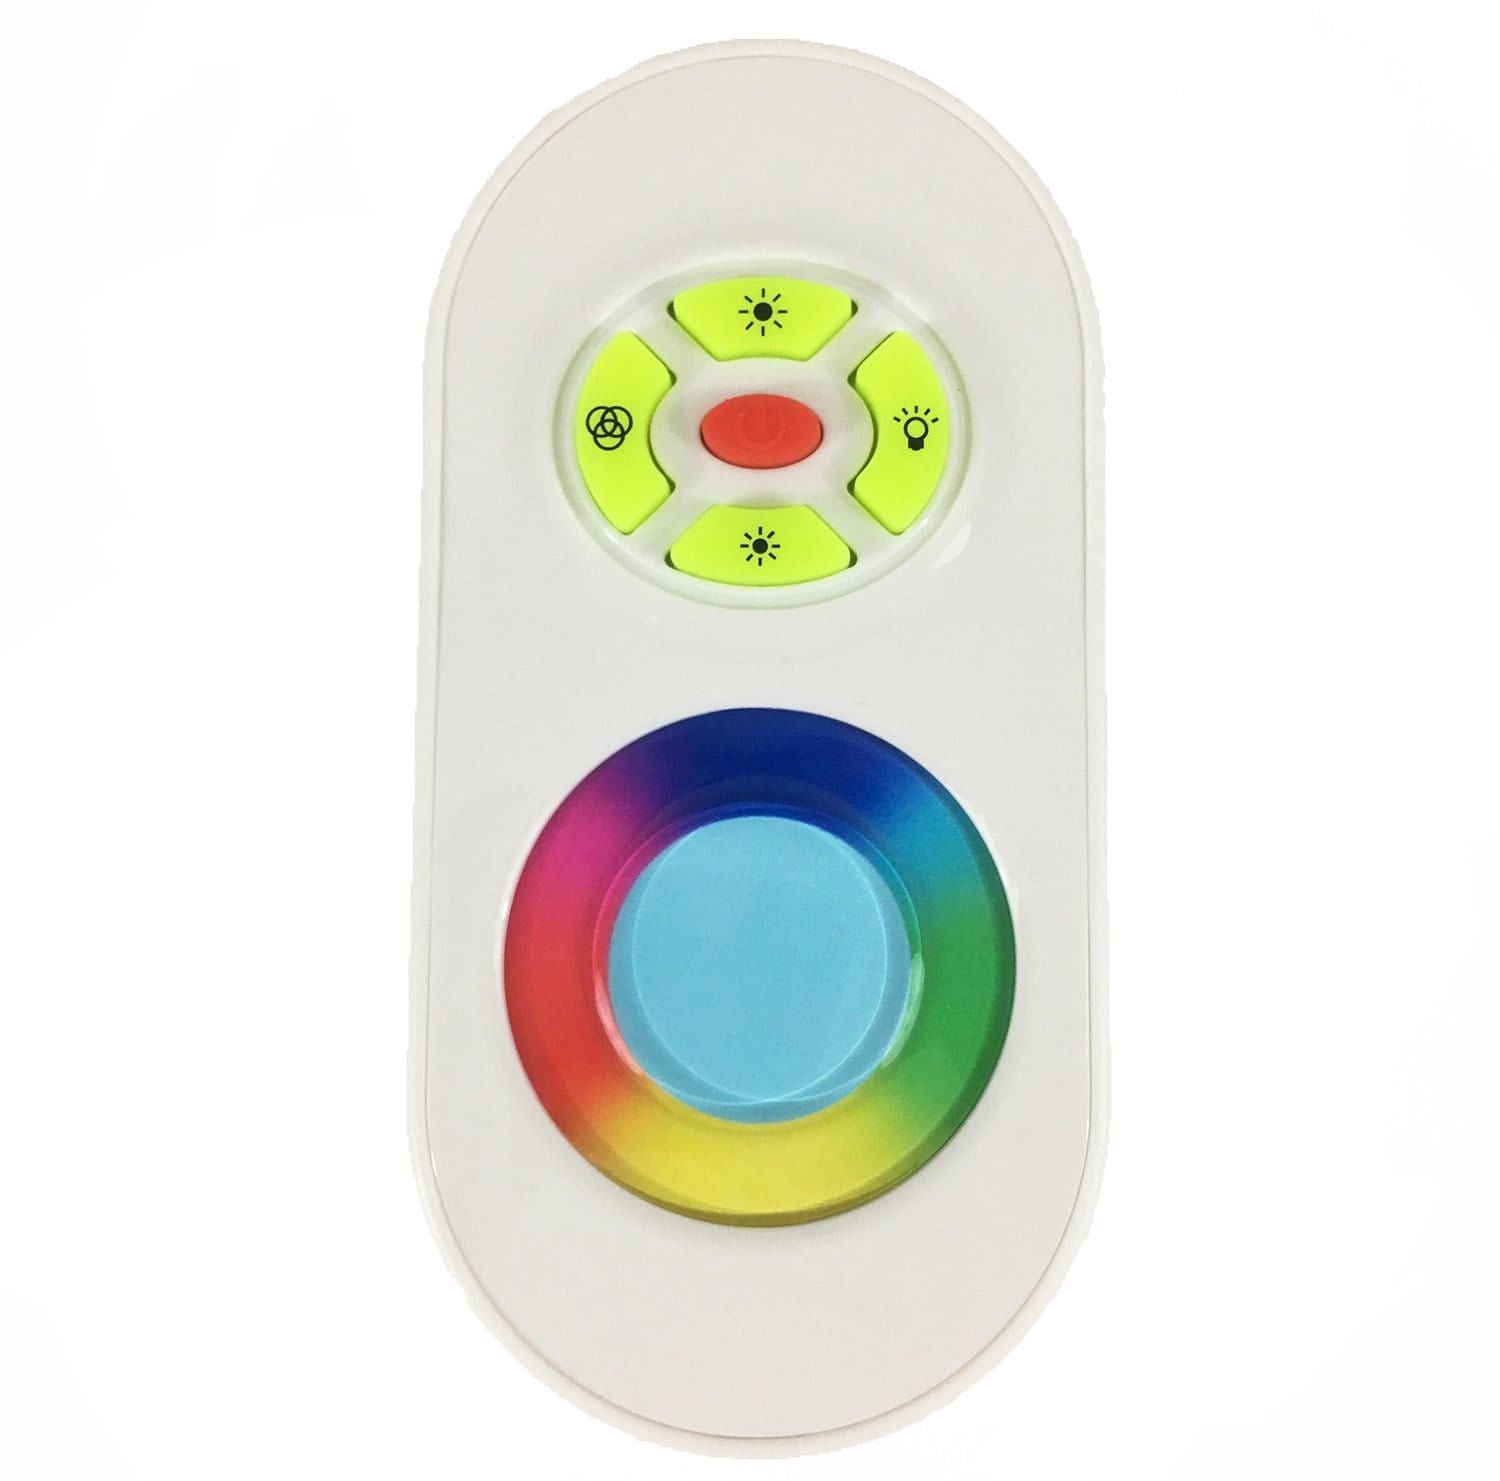 Scandvik 41615 Rainbow-Touch Remote